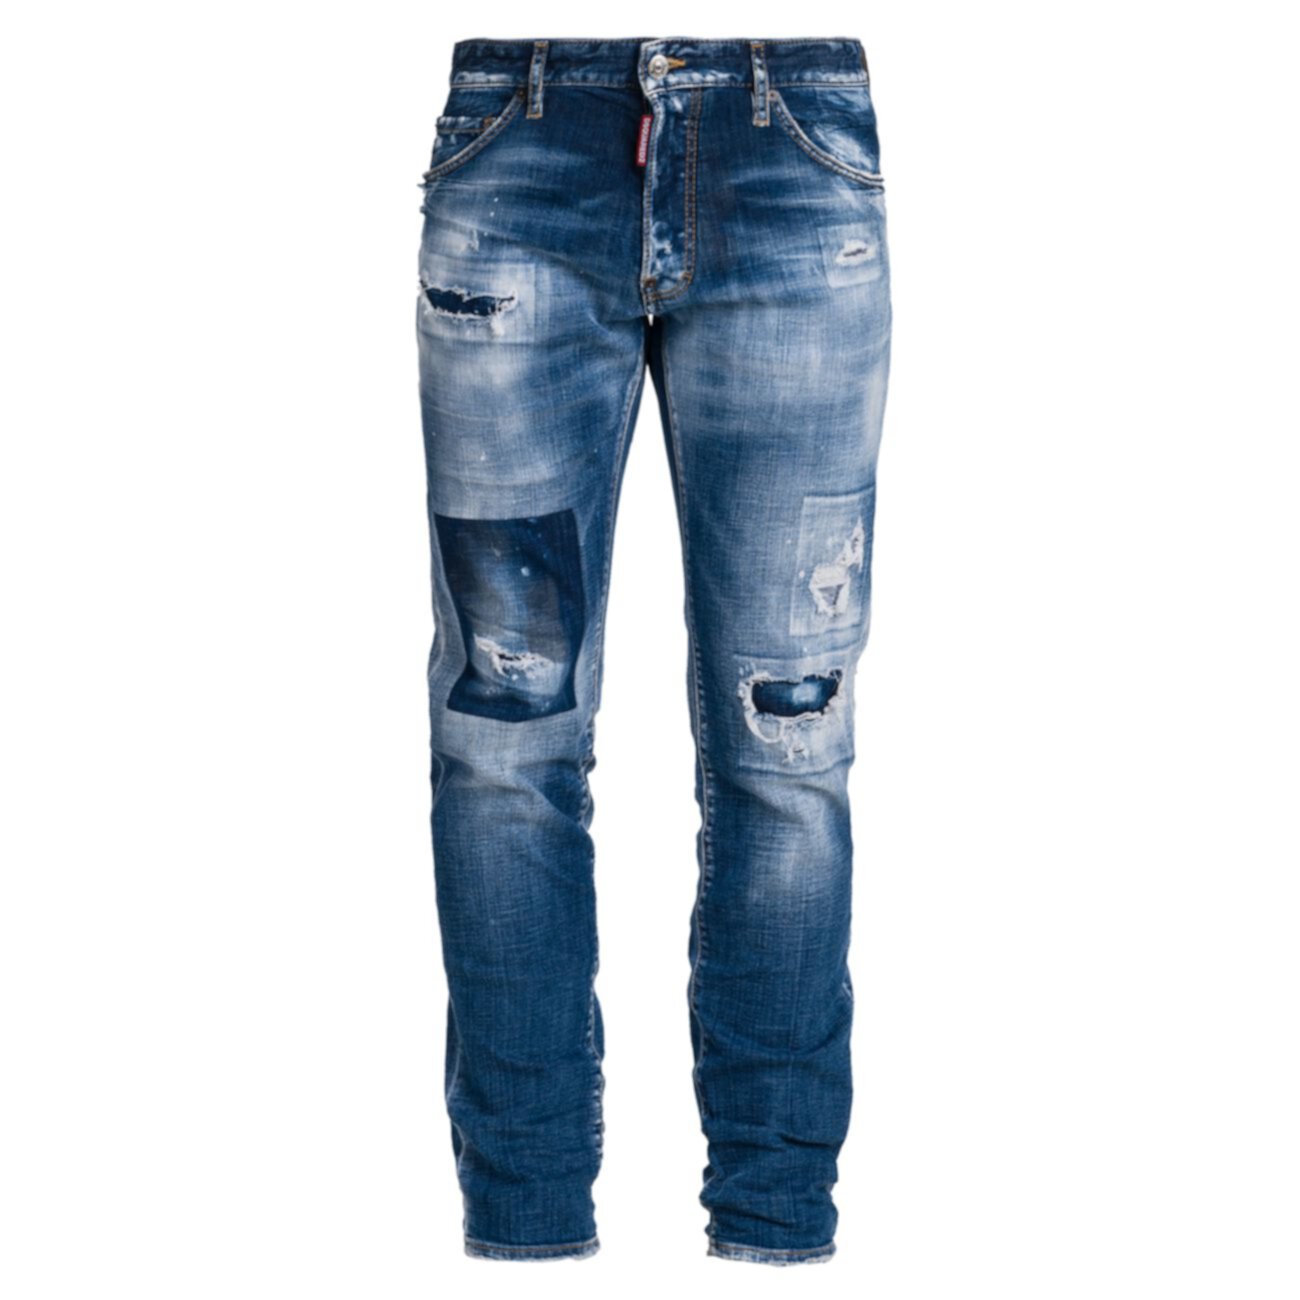 Отбеленные рваные / ремонтные джинсы Cool Guy DSQUARED2